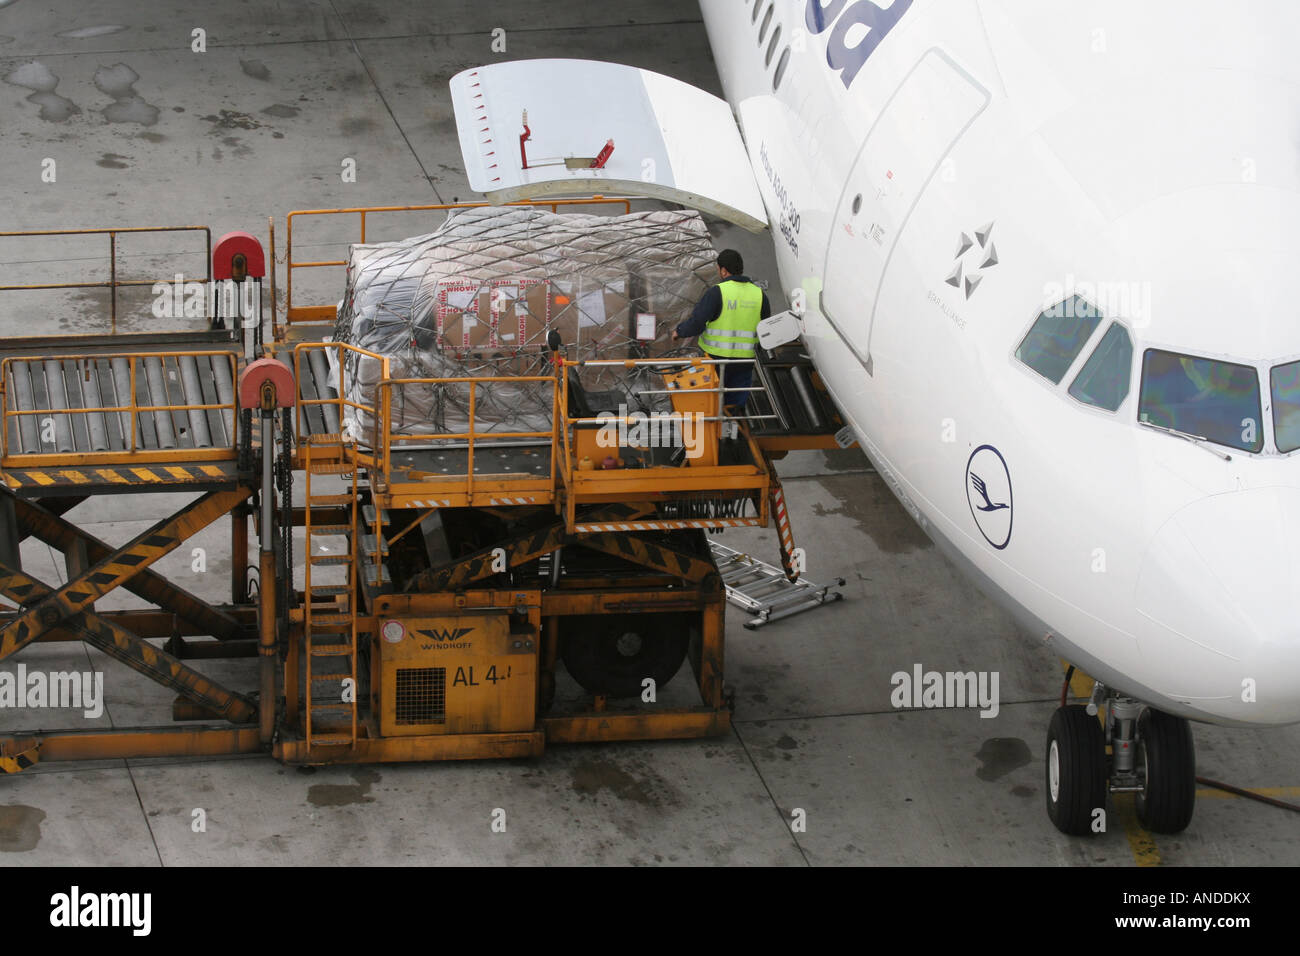 Laden von Luftfracht an Bord eines kommerziellen Jet-Flugzeugs. Internationale Güterverkehrsnetze und globale Lieferketten. Stockfoto